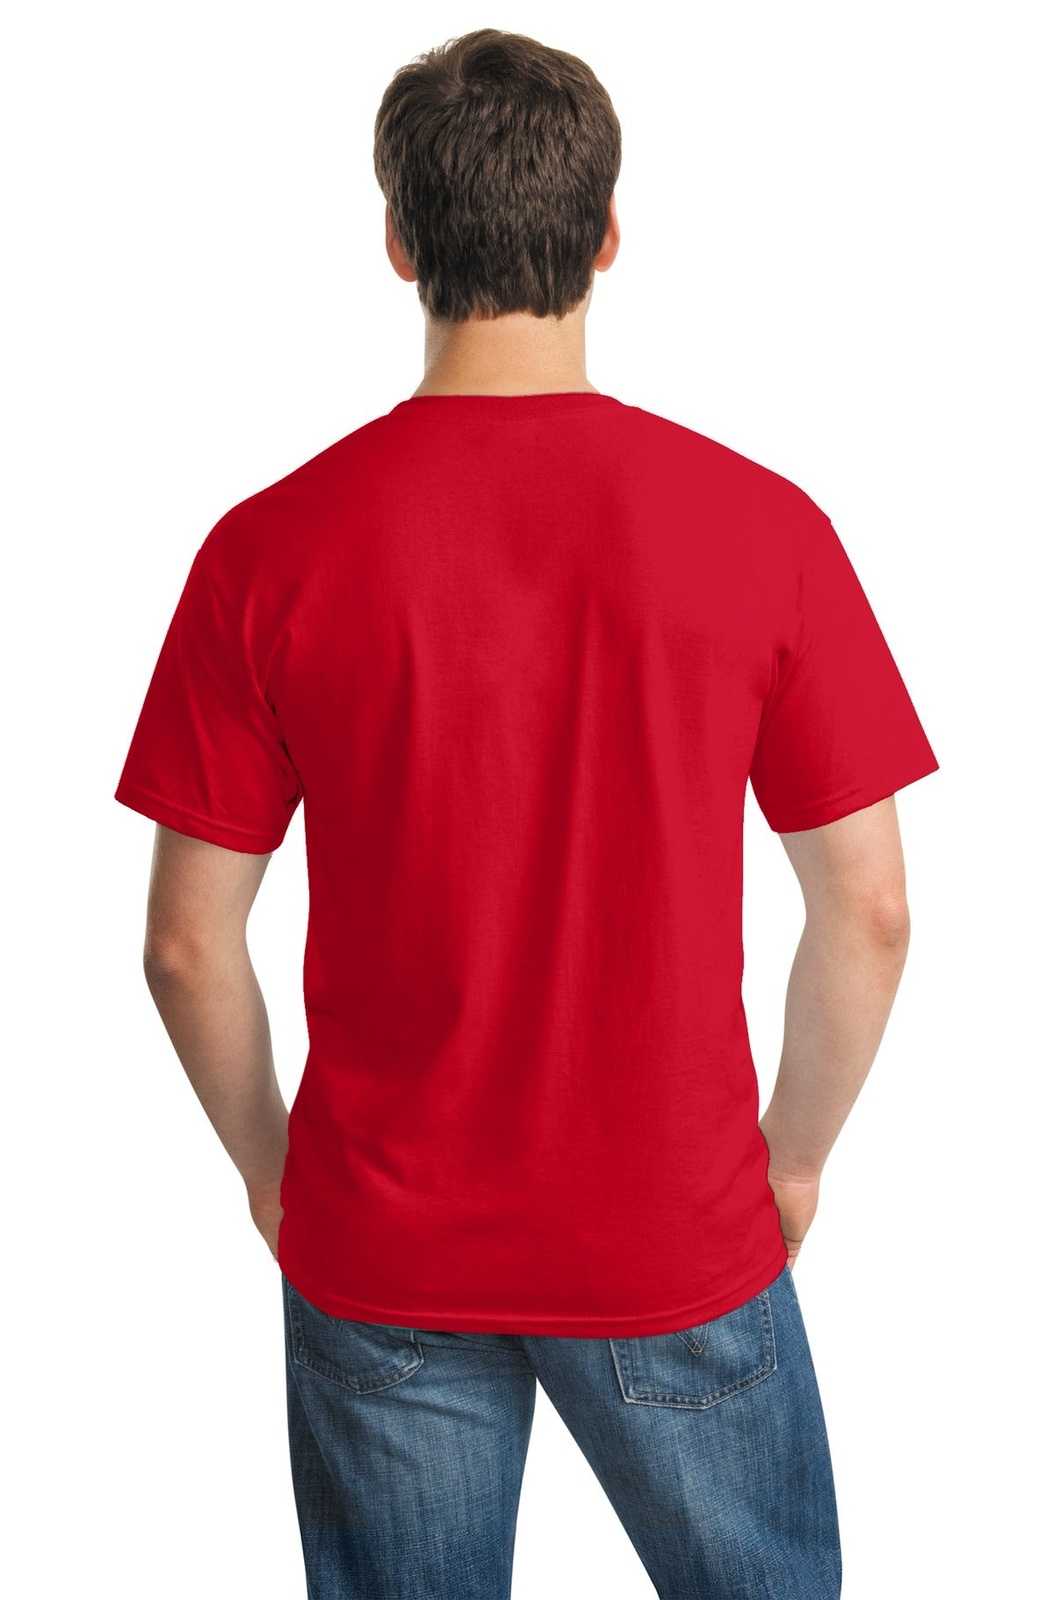 Gildan 5000 Heavy Cotton 100% Cotton T-Shirt - Red - HIT a Double